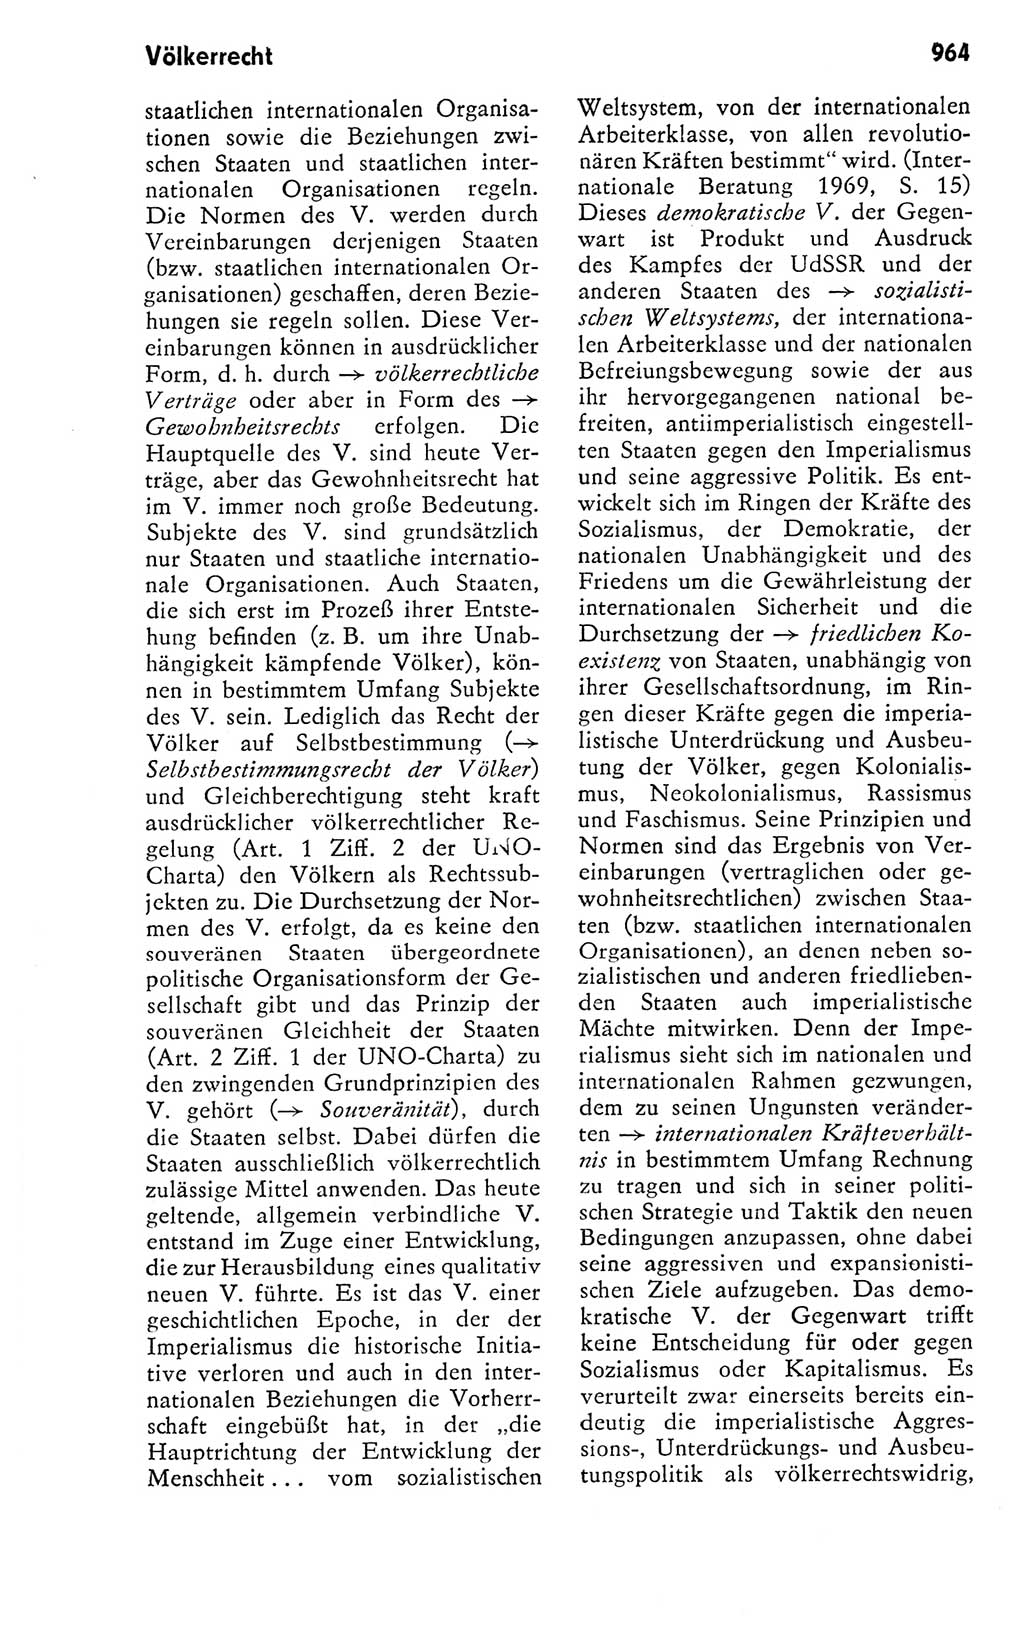 Kleines politisches Wörterbuch [Deutsche Demokratische Republik (DDR)] 1978, Seite 964 (Kl. pol. Wb. DDR 1978, S. 964)